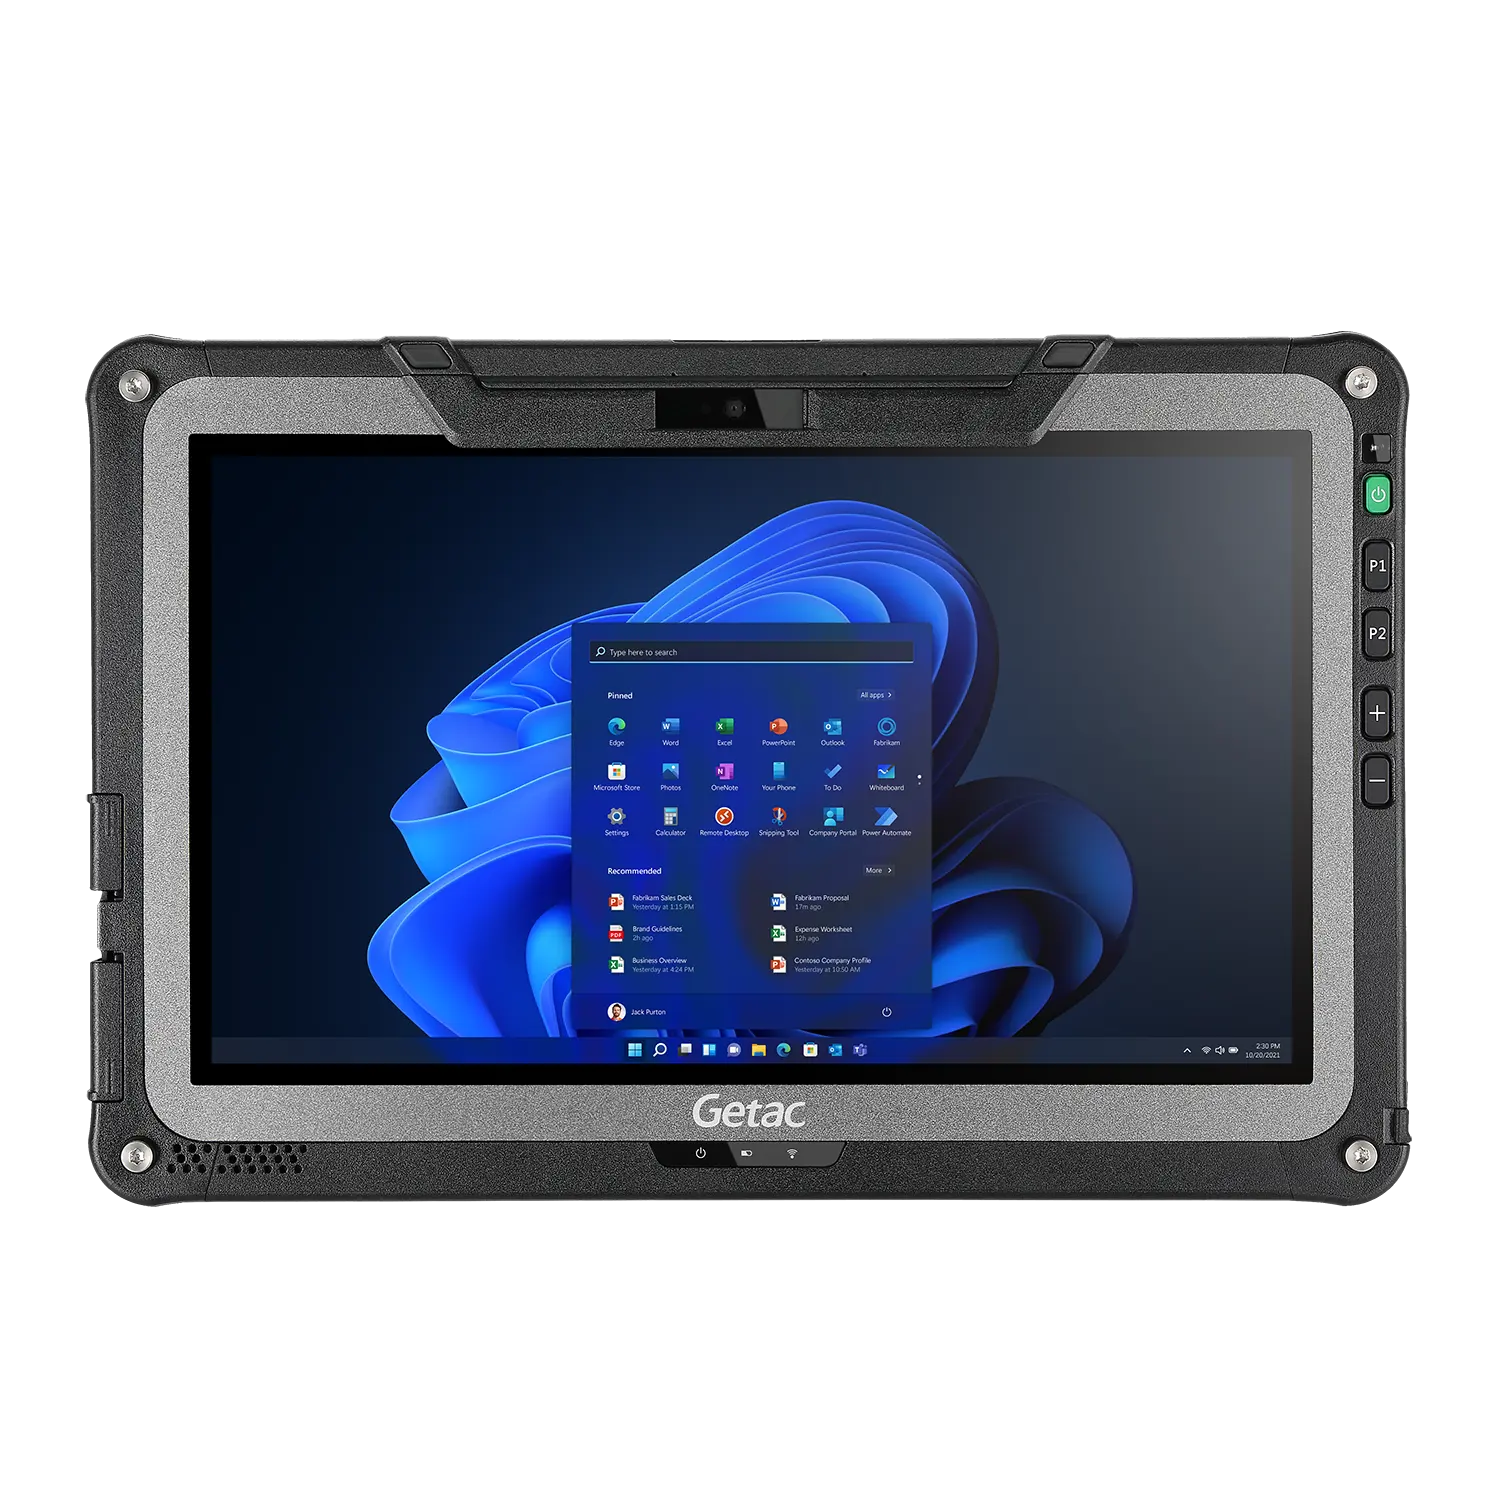 Getac F110-tam sağlam 11.6 inç tablet PC kapalı ve açık kullanım için